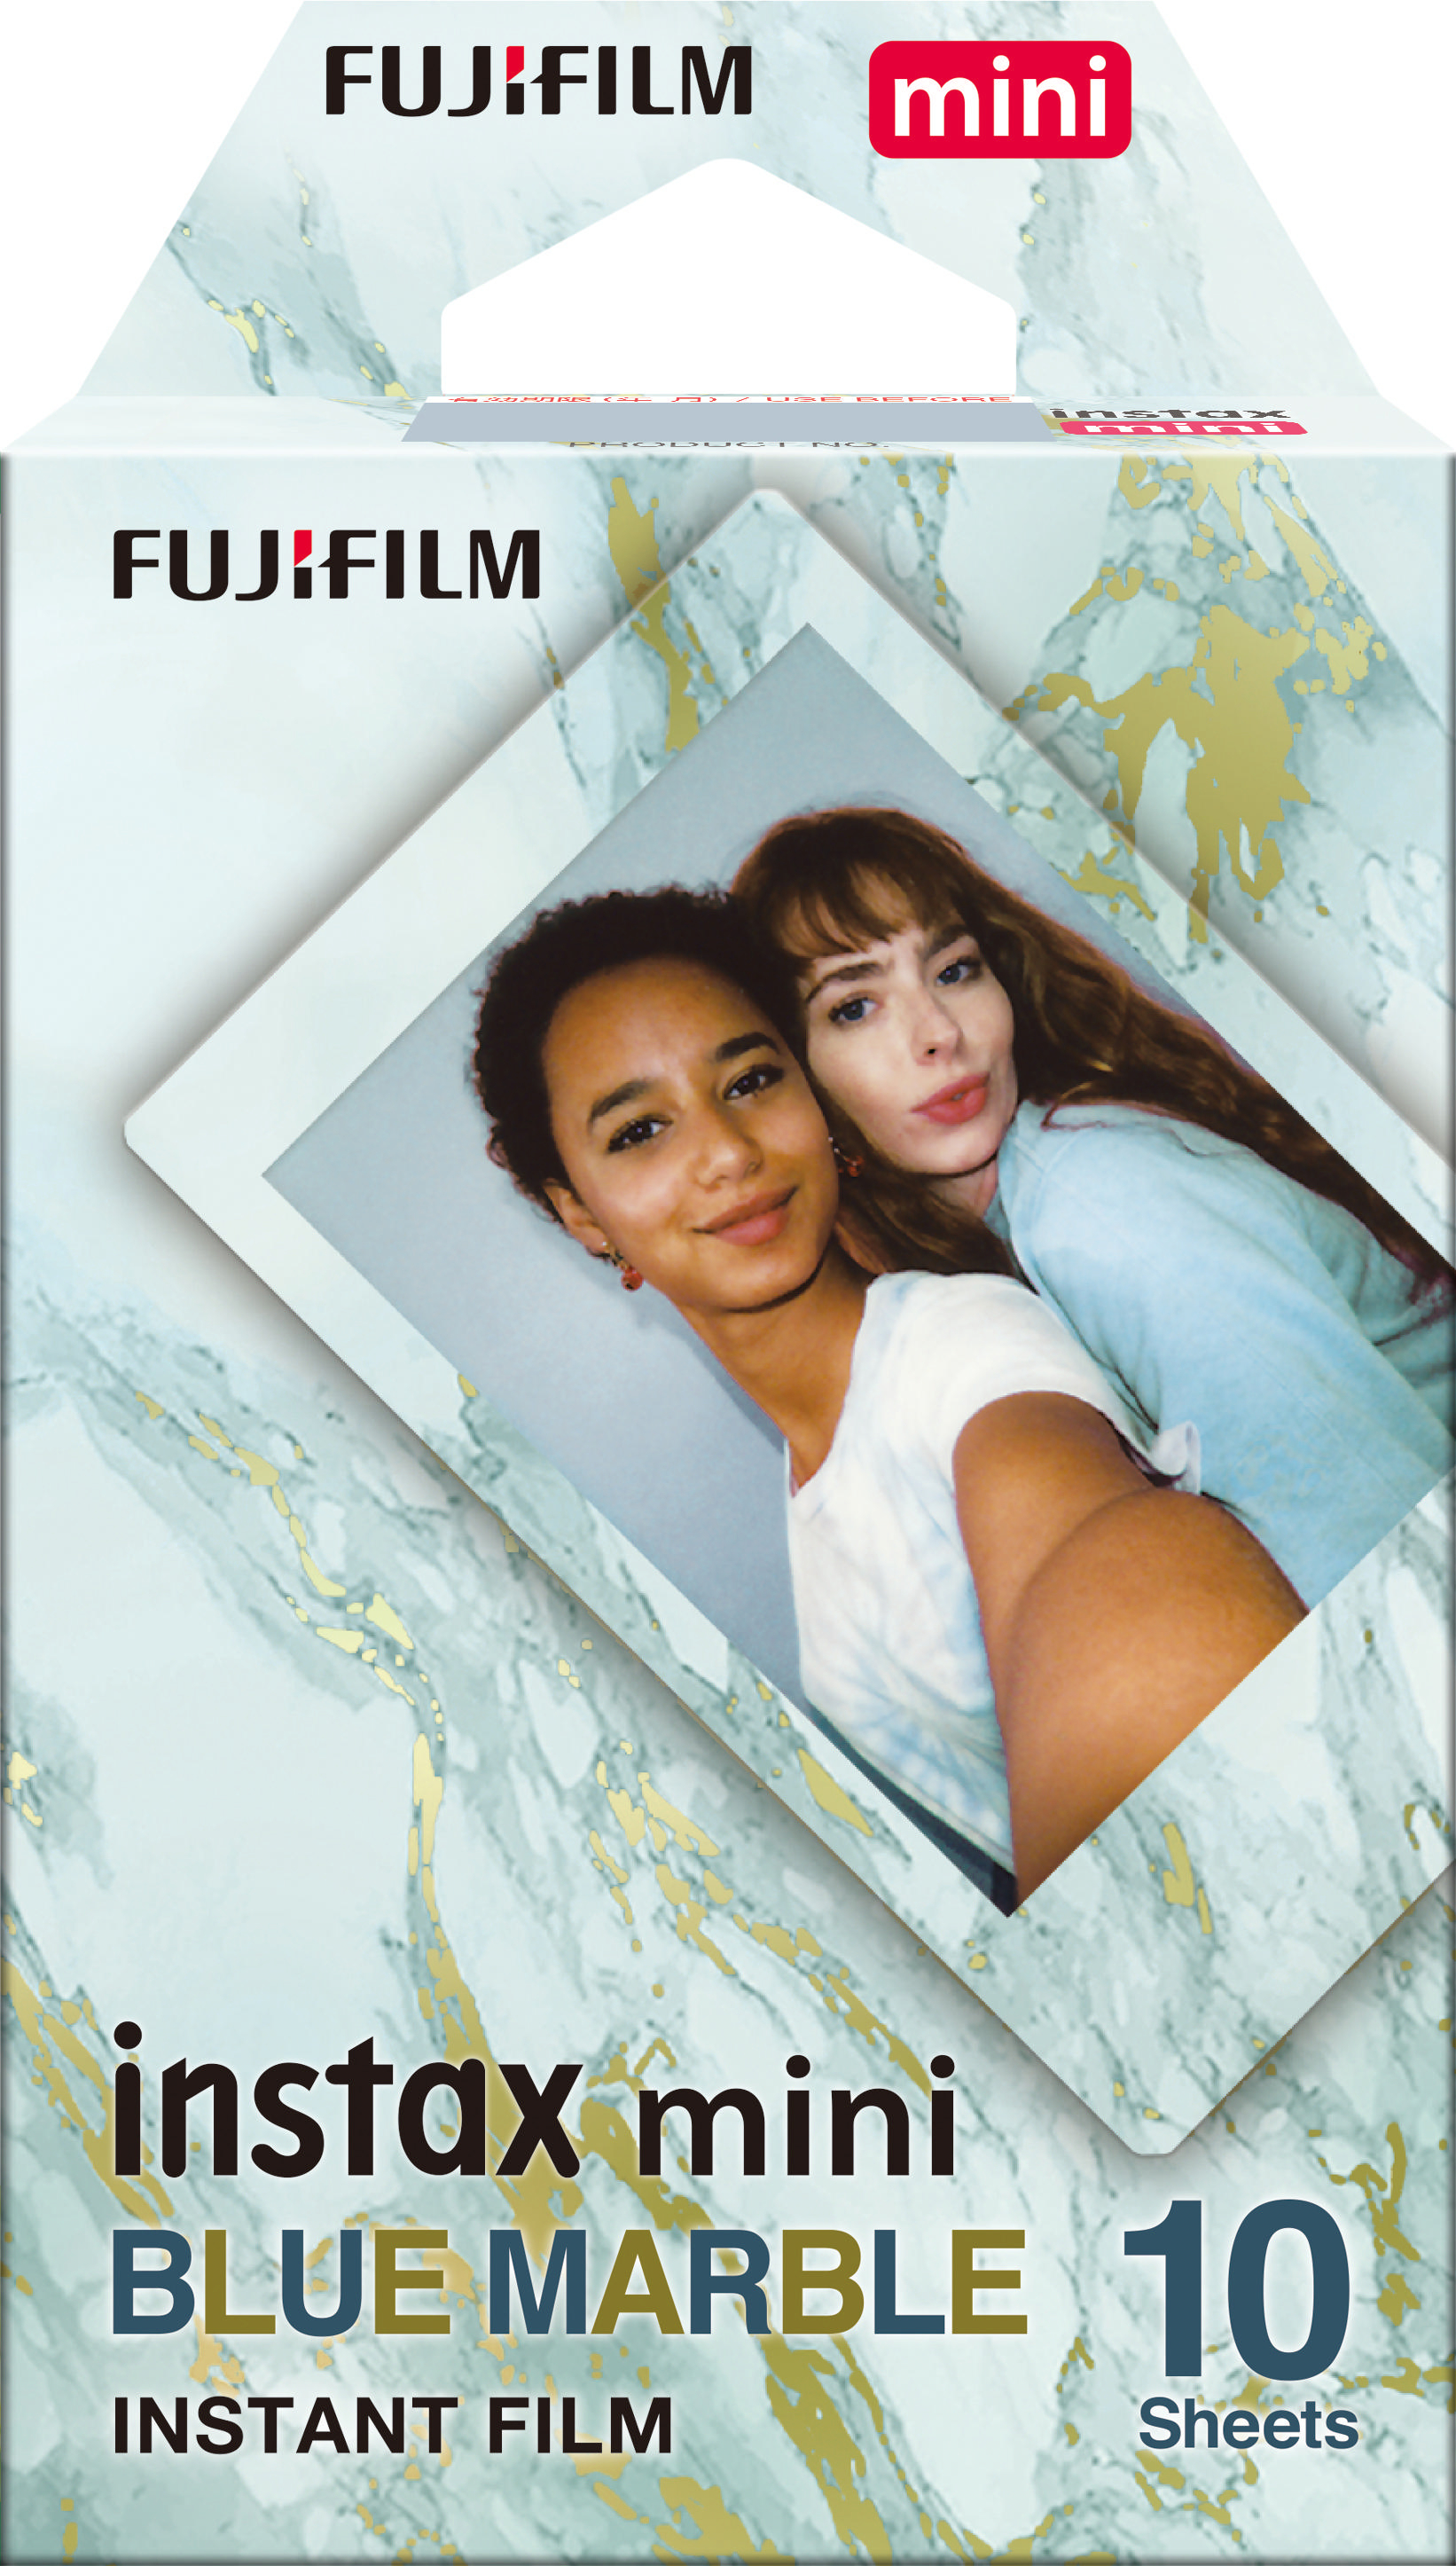 Film Blue mini Sofortbildfilm Marble instax FUJIFILM